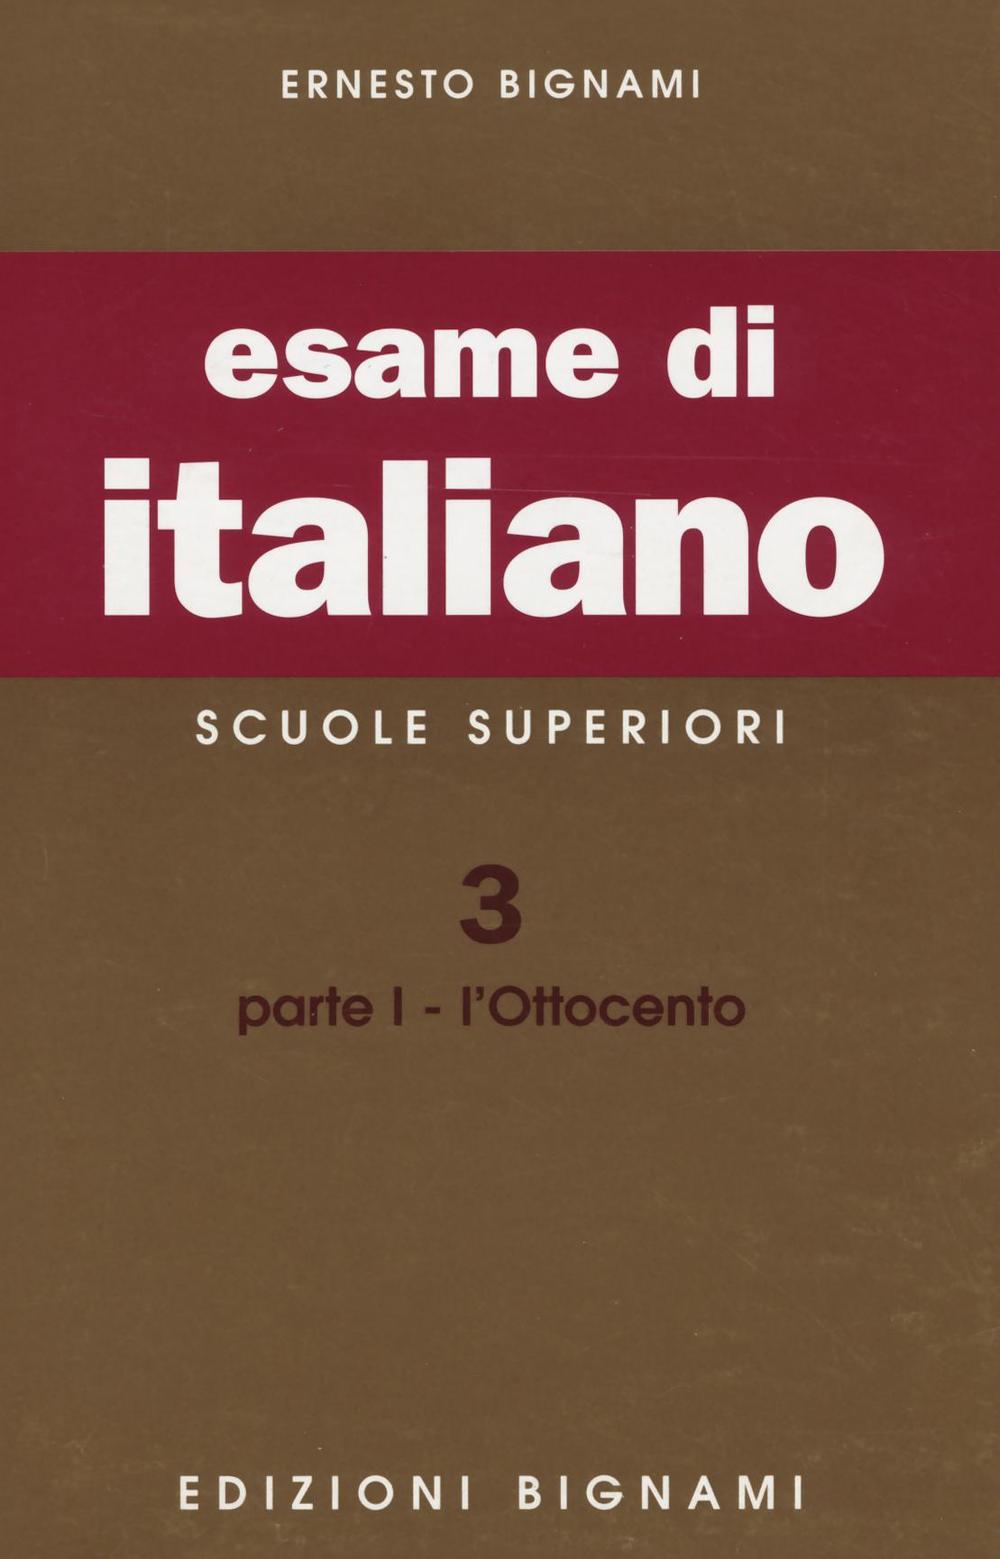 Kniha Esame di italiano. Scuole superiori Ernesto Bignami